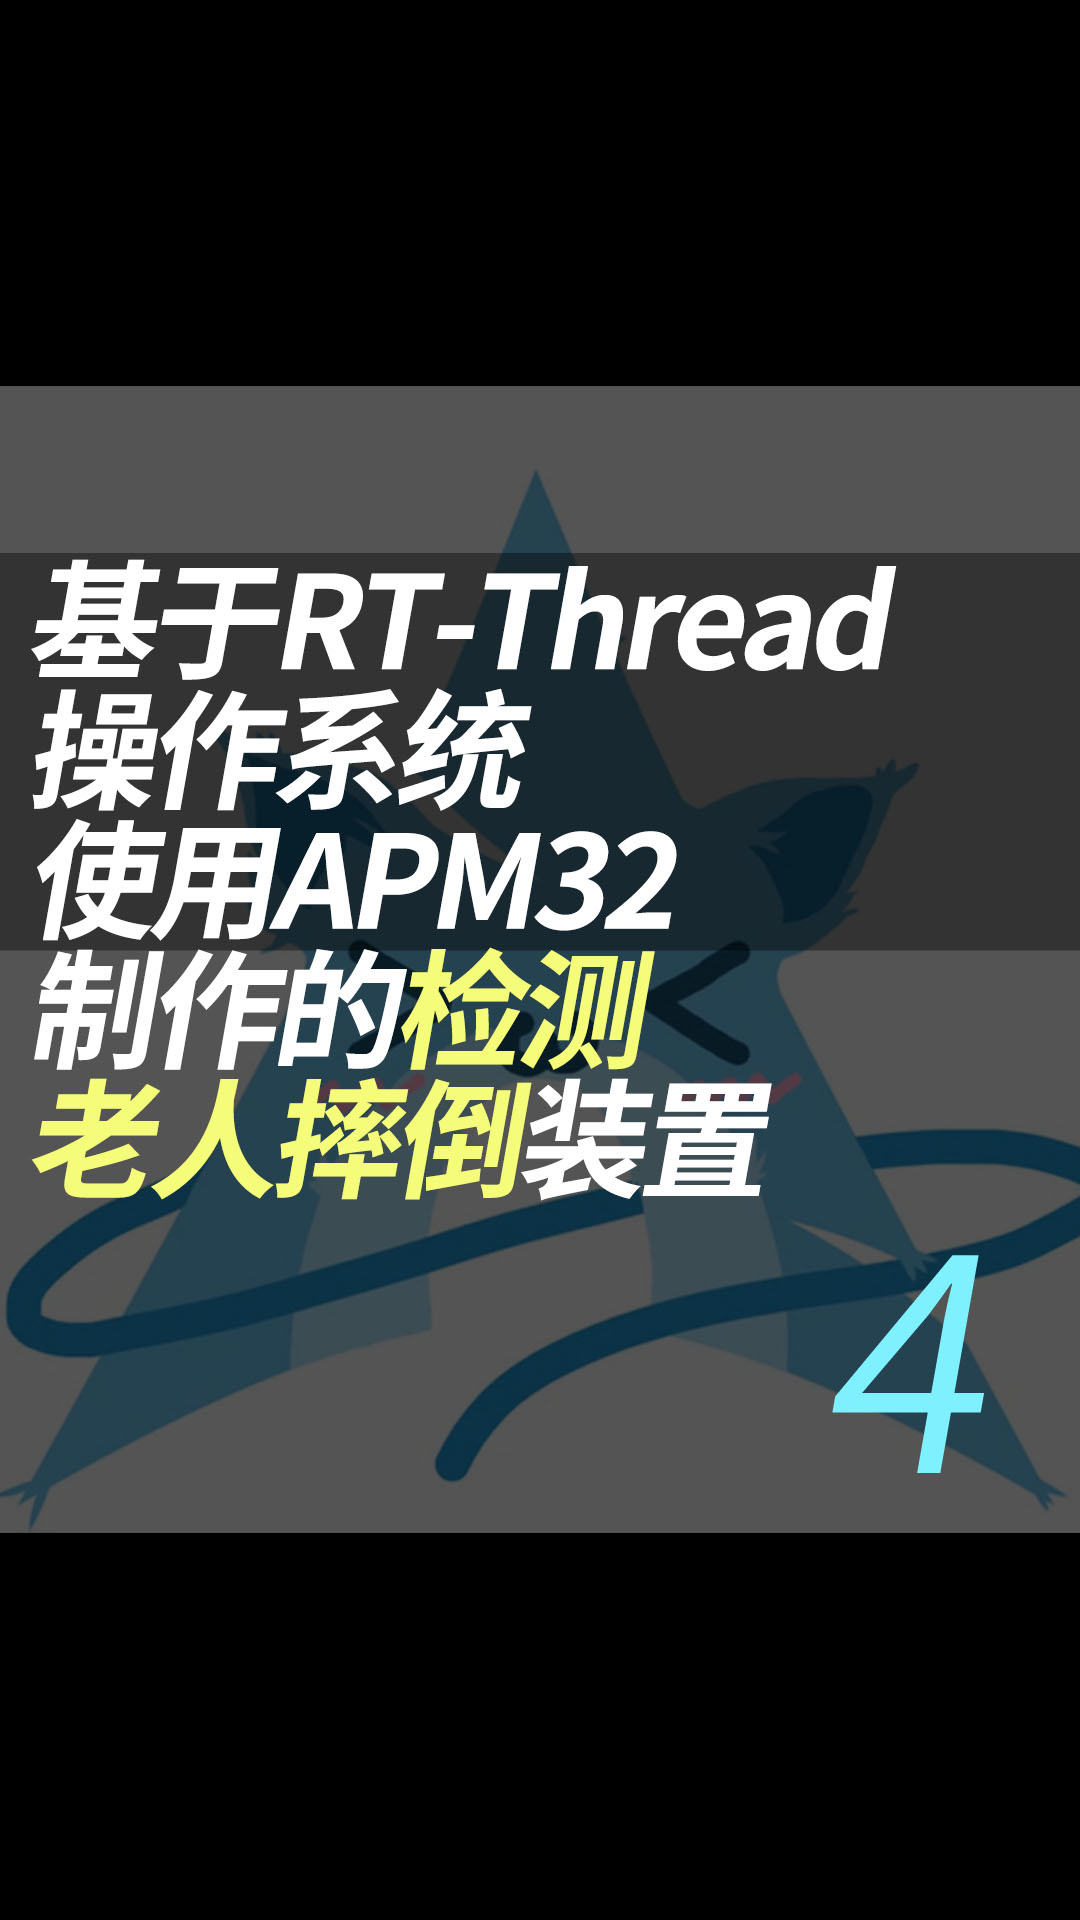 基于RT-Thread操作系统使用APM32制作的检测老人摔倒装置 - 4.代码处理#RT-Thread 